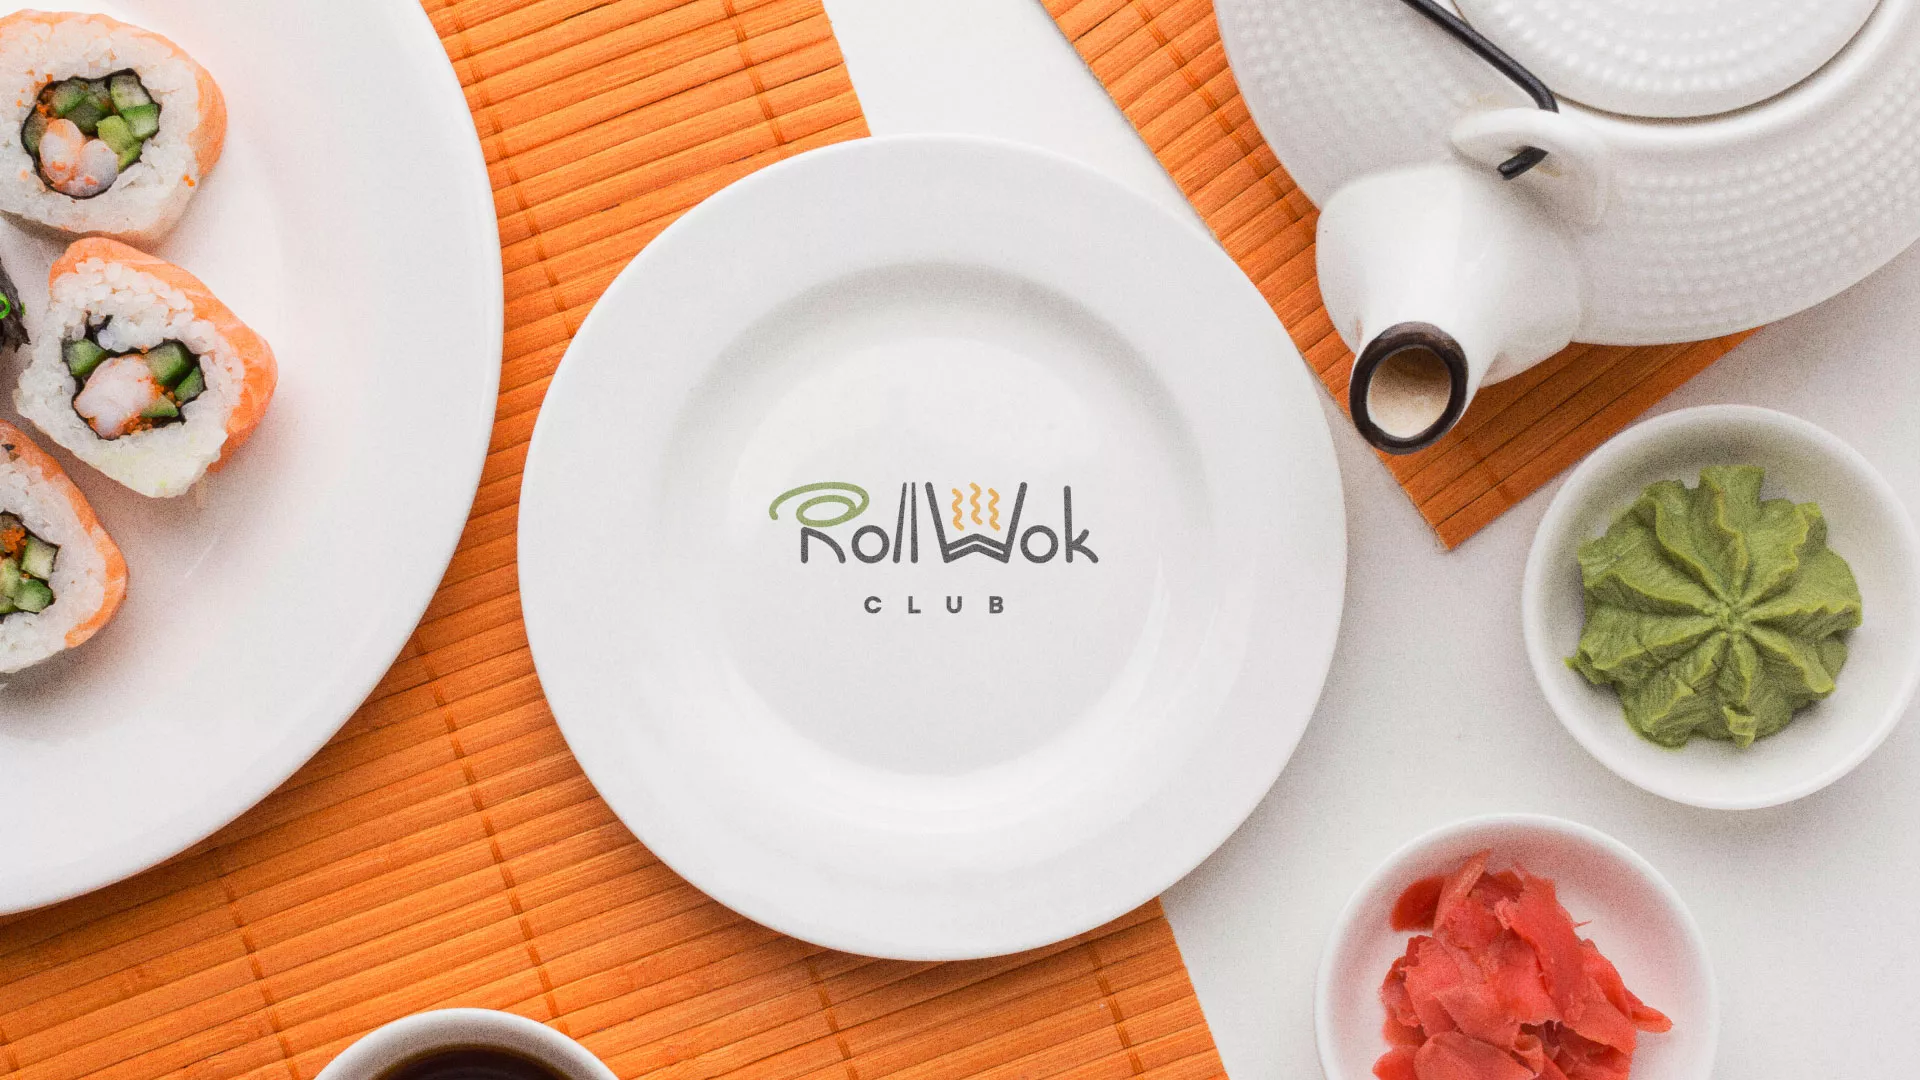 Разработка логотипа и фирменного стиля суши-бара «Roll Wok Club» в Костомукше